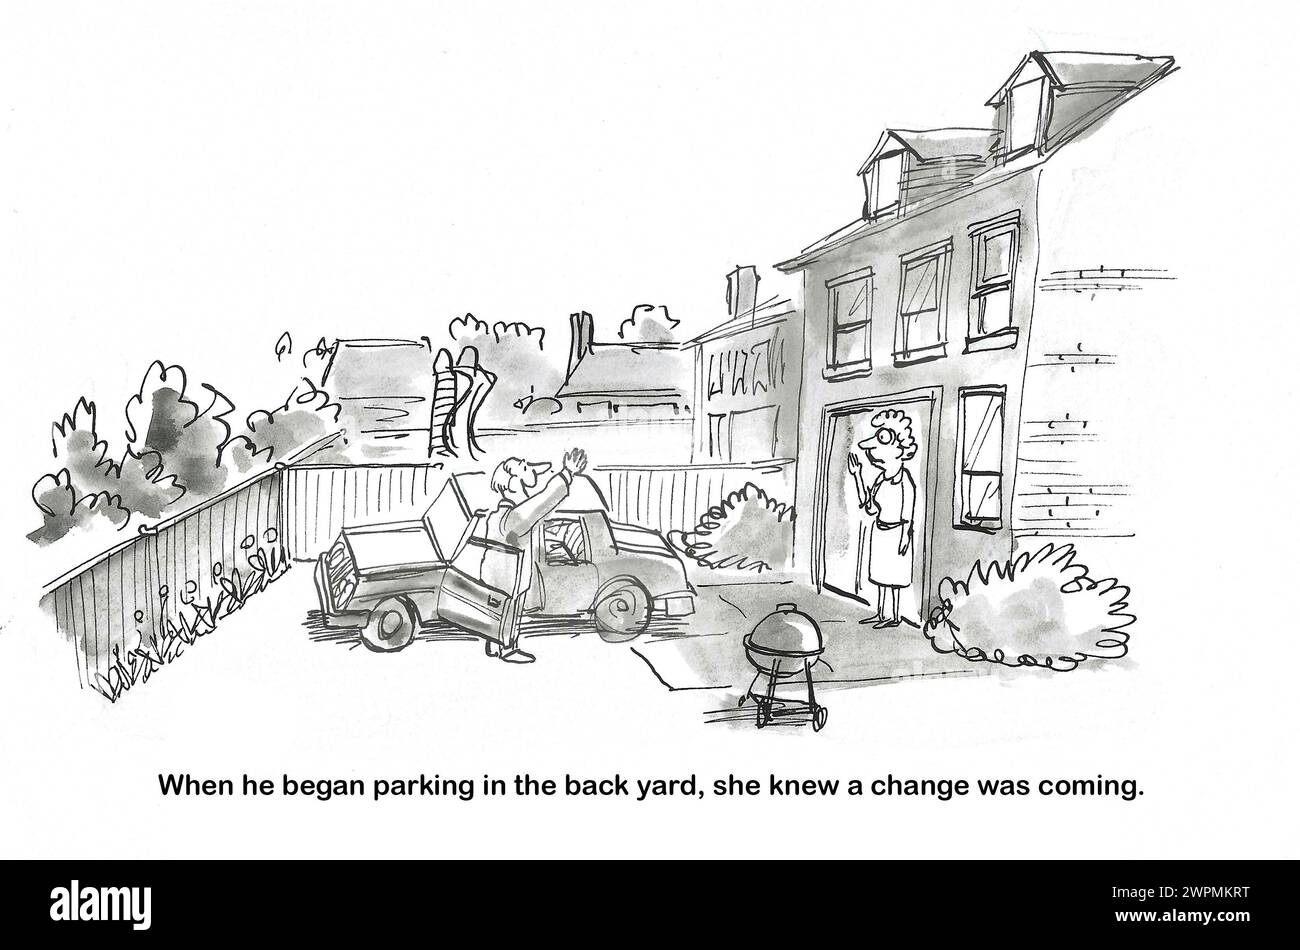 BW dessin animé d'une femme voyant un changement dans le comportement de son mari, il est stationné la voiture dans la cour arrière. Banque D'Images